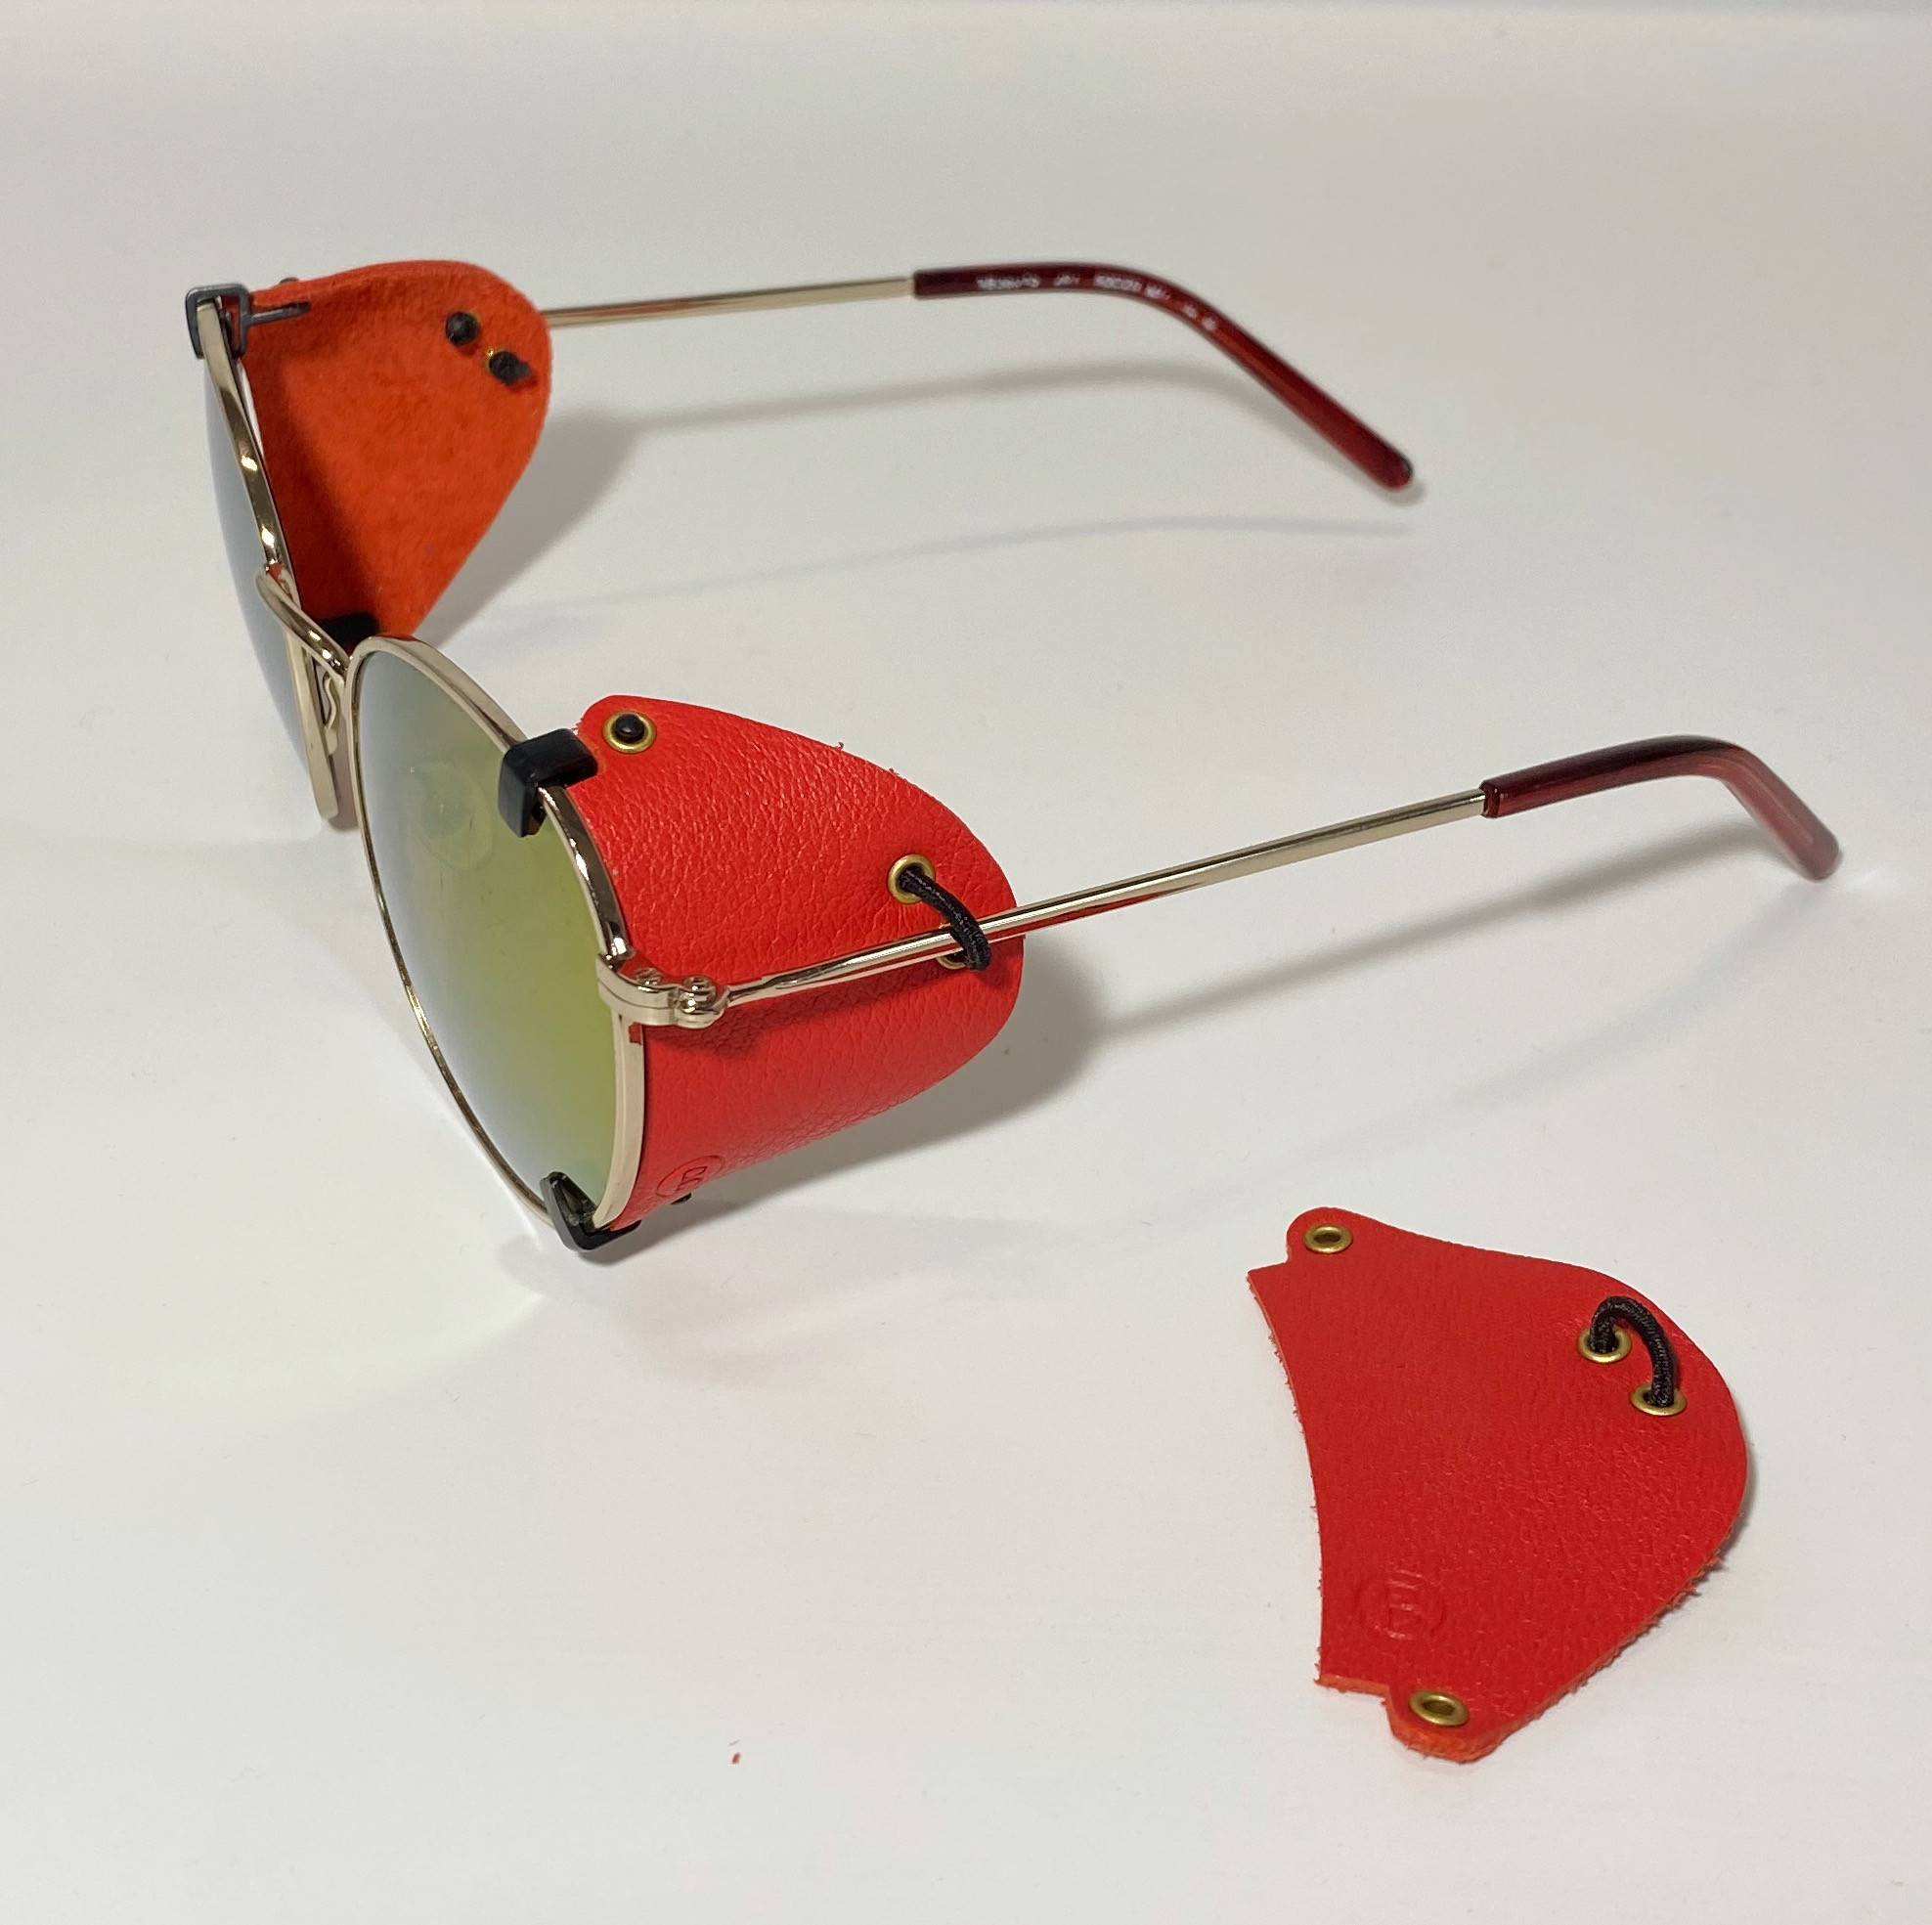 Blinkset side shields for sunglasses, Fire model.